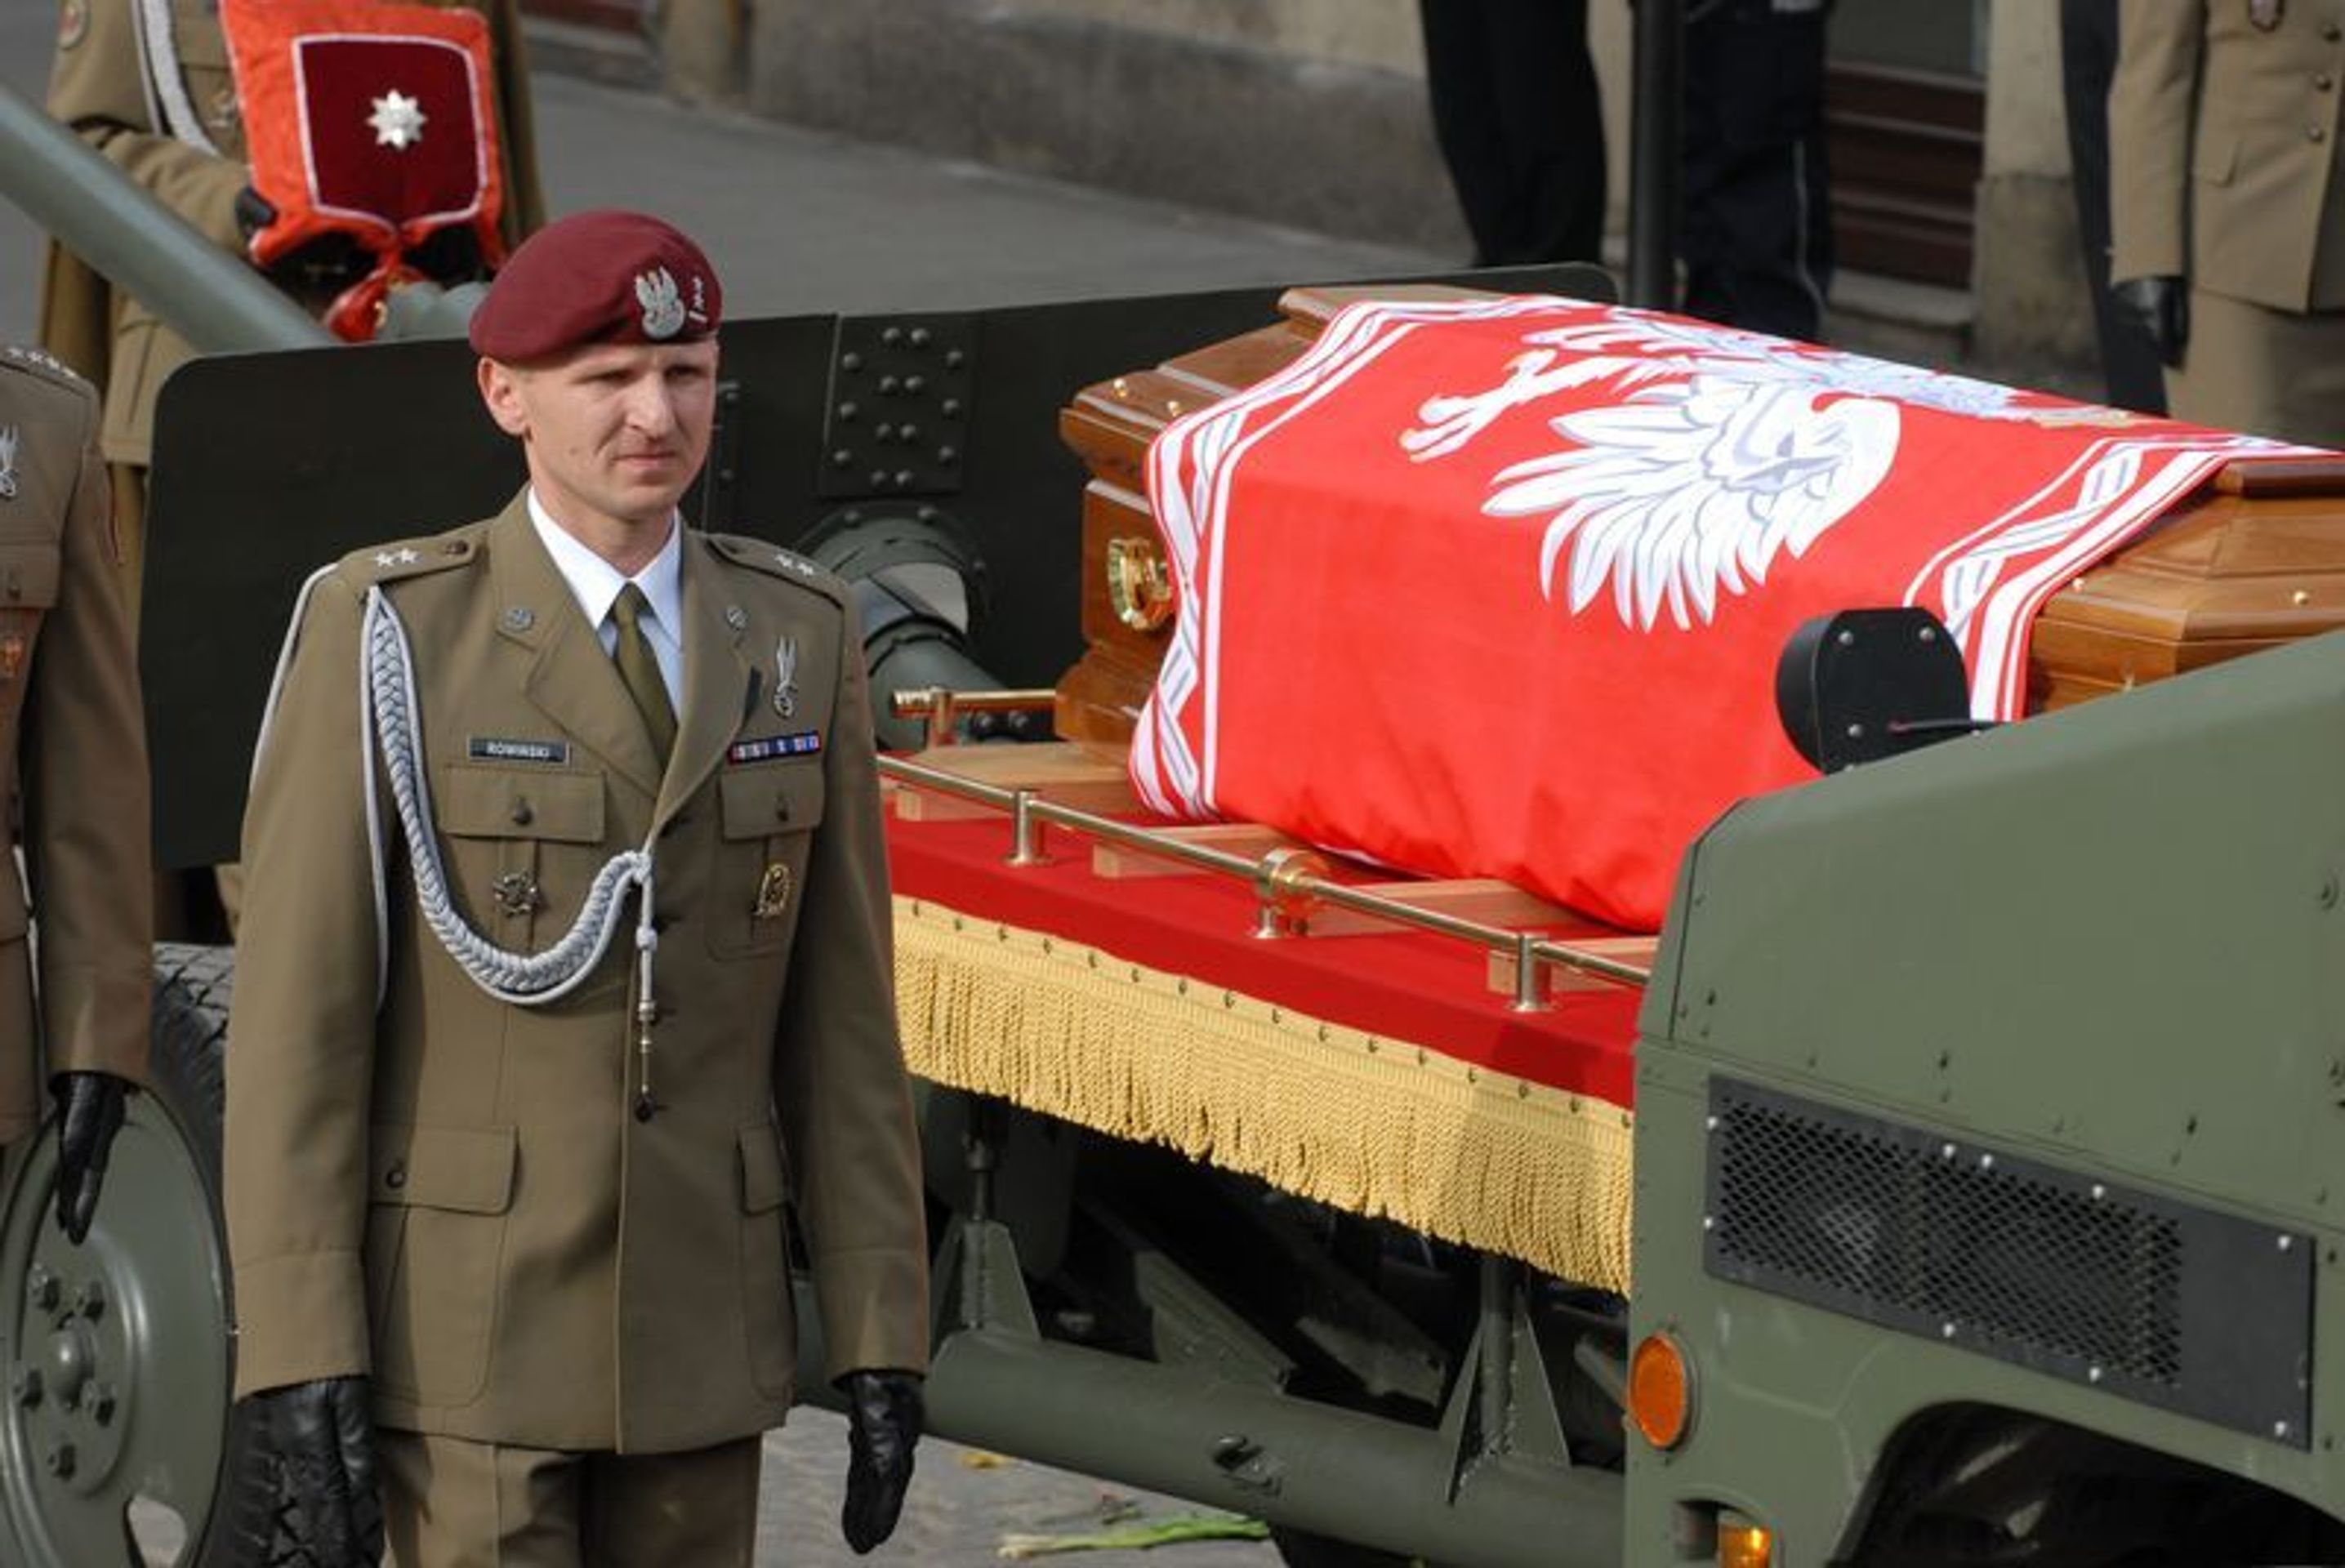 Polský pohřeb prezidentského páru-2 - GALERIE: Polský pohřeb prezidentského páru (2/8)